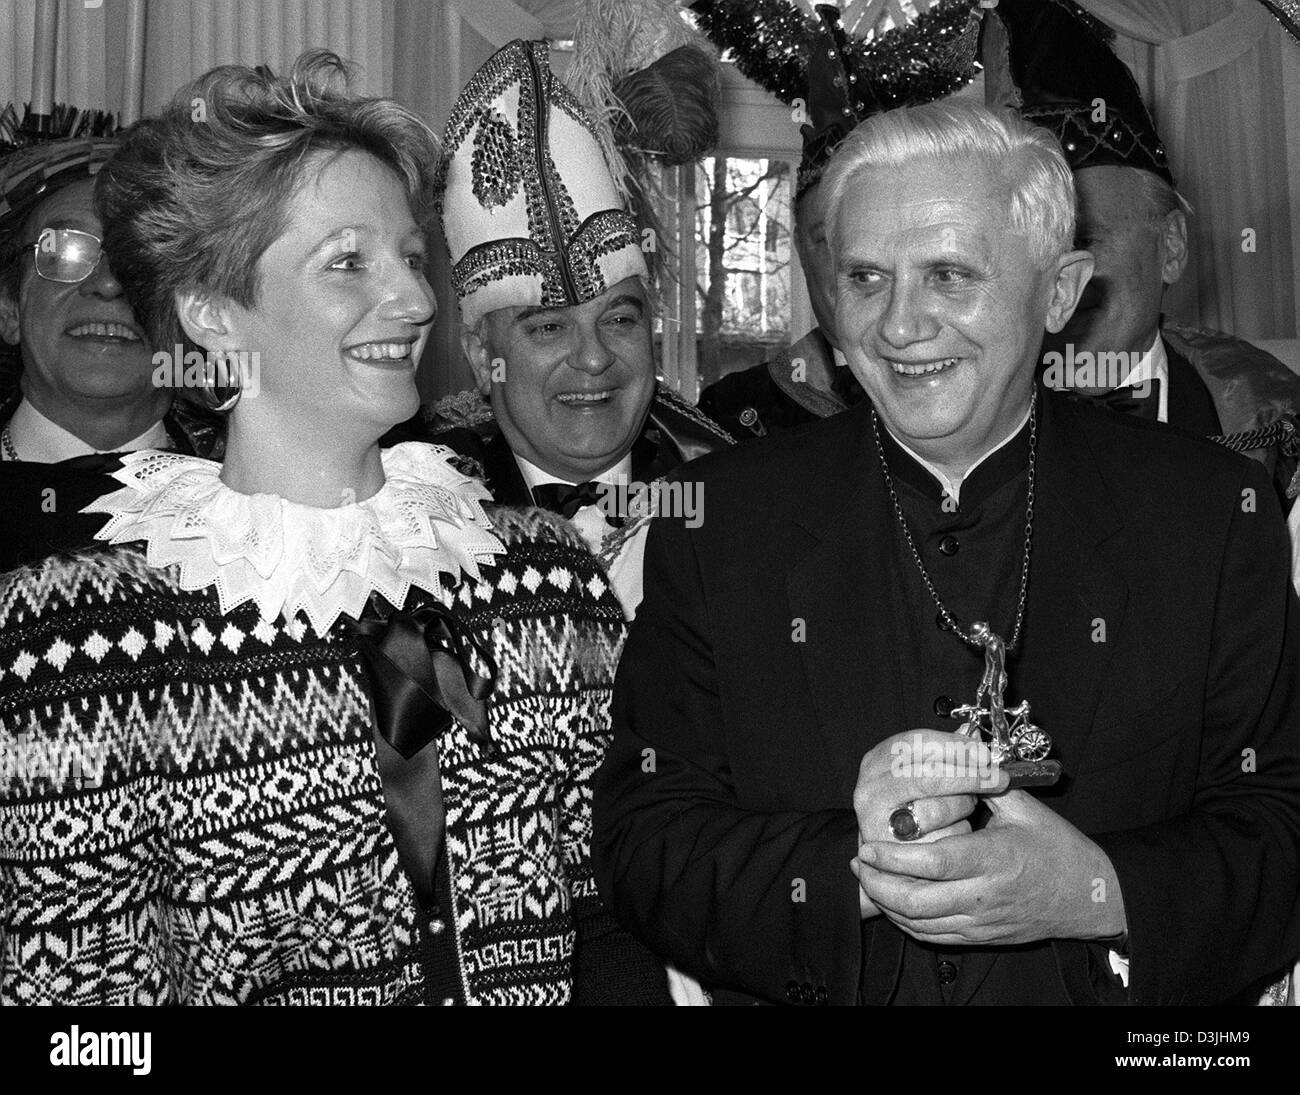 (Dpa-Dateien) - Medaille Cardinal Joseph Ratzinger (R) Lächeln während der Zeremonie, wo er die so genannte Valentins erhält, an der katholischen Akademie in München, Deutschland, 4. Januar 1989. Ratzinger erhielt für seine Schriften und Predigten. Stockfoto